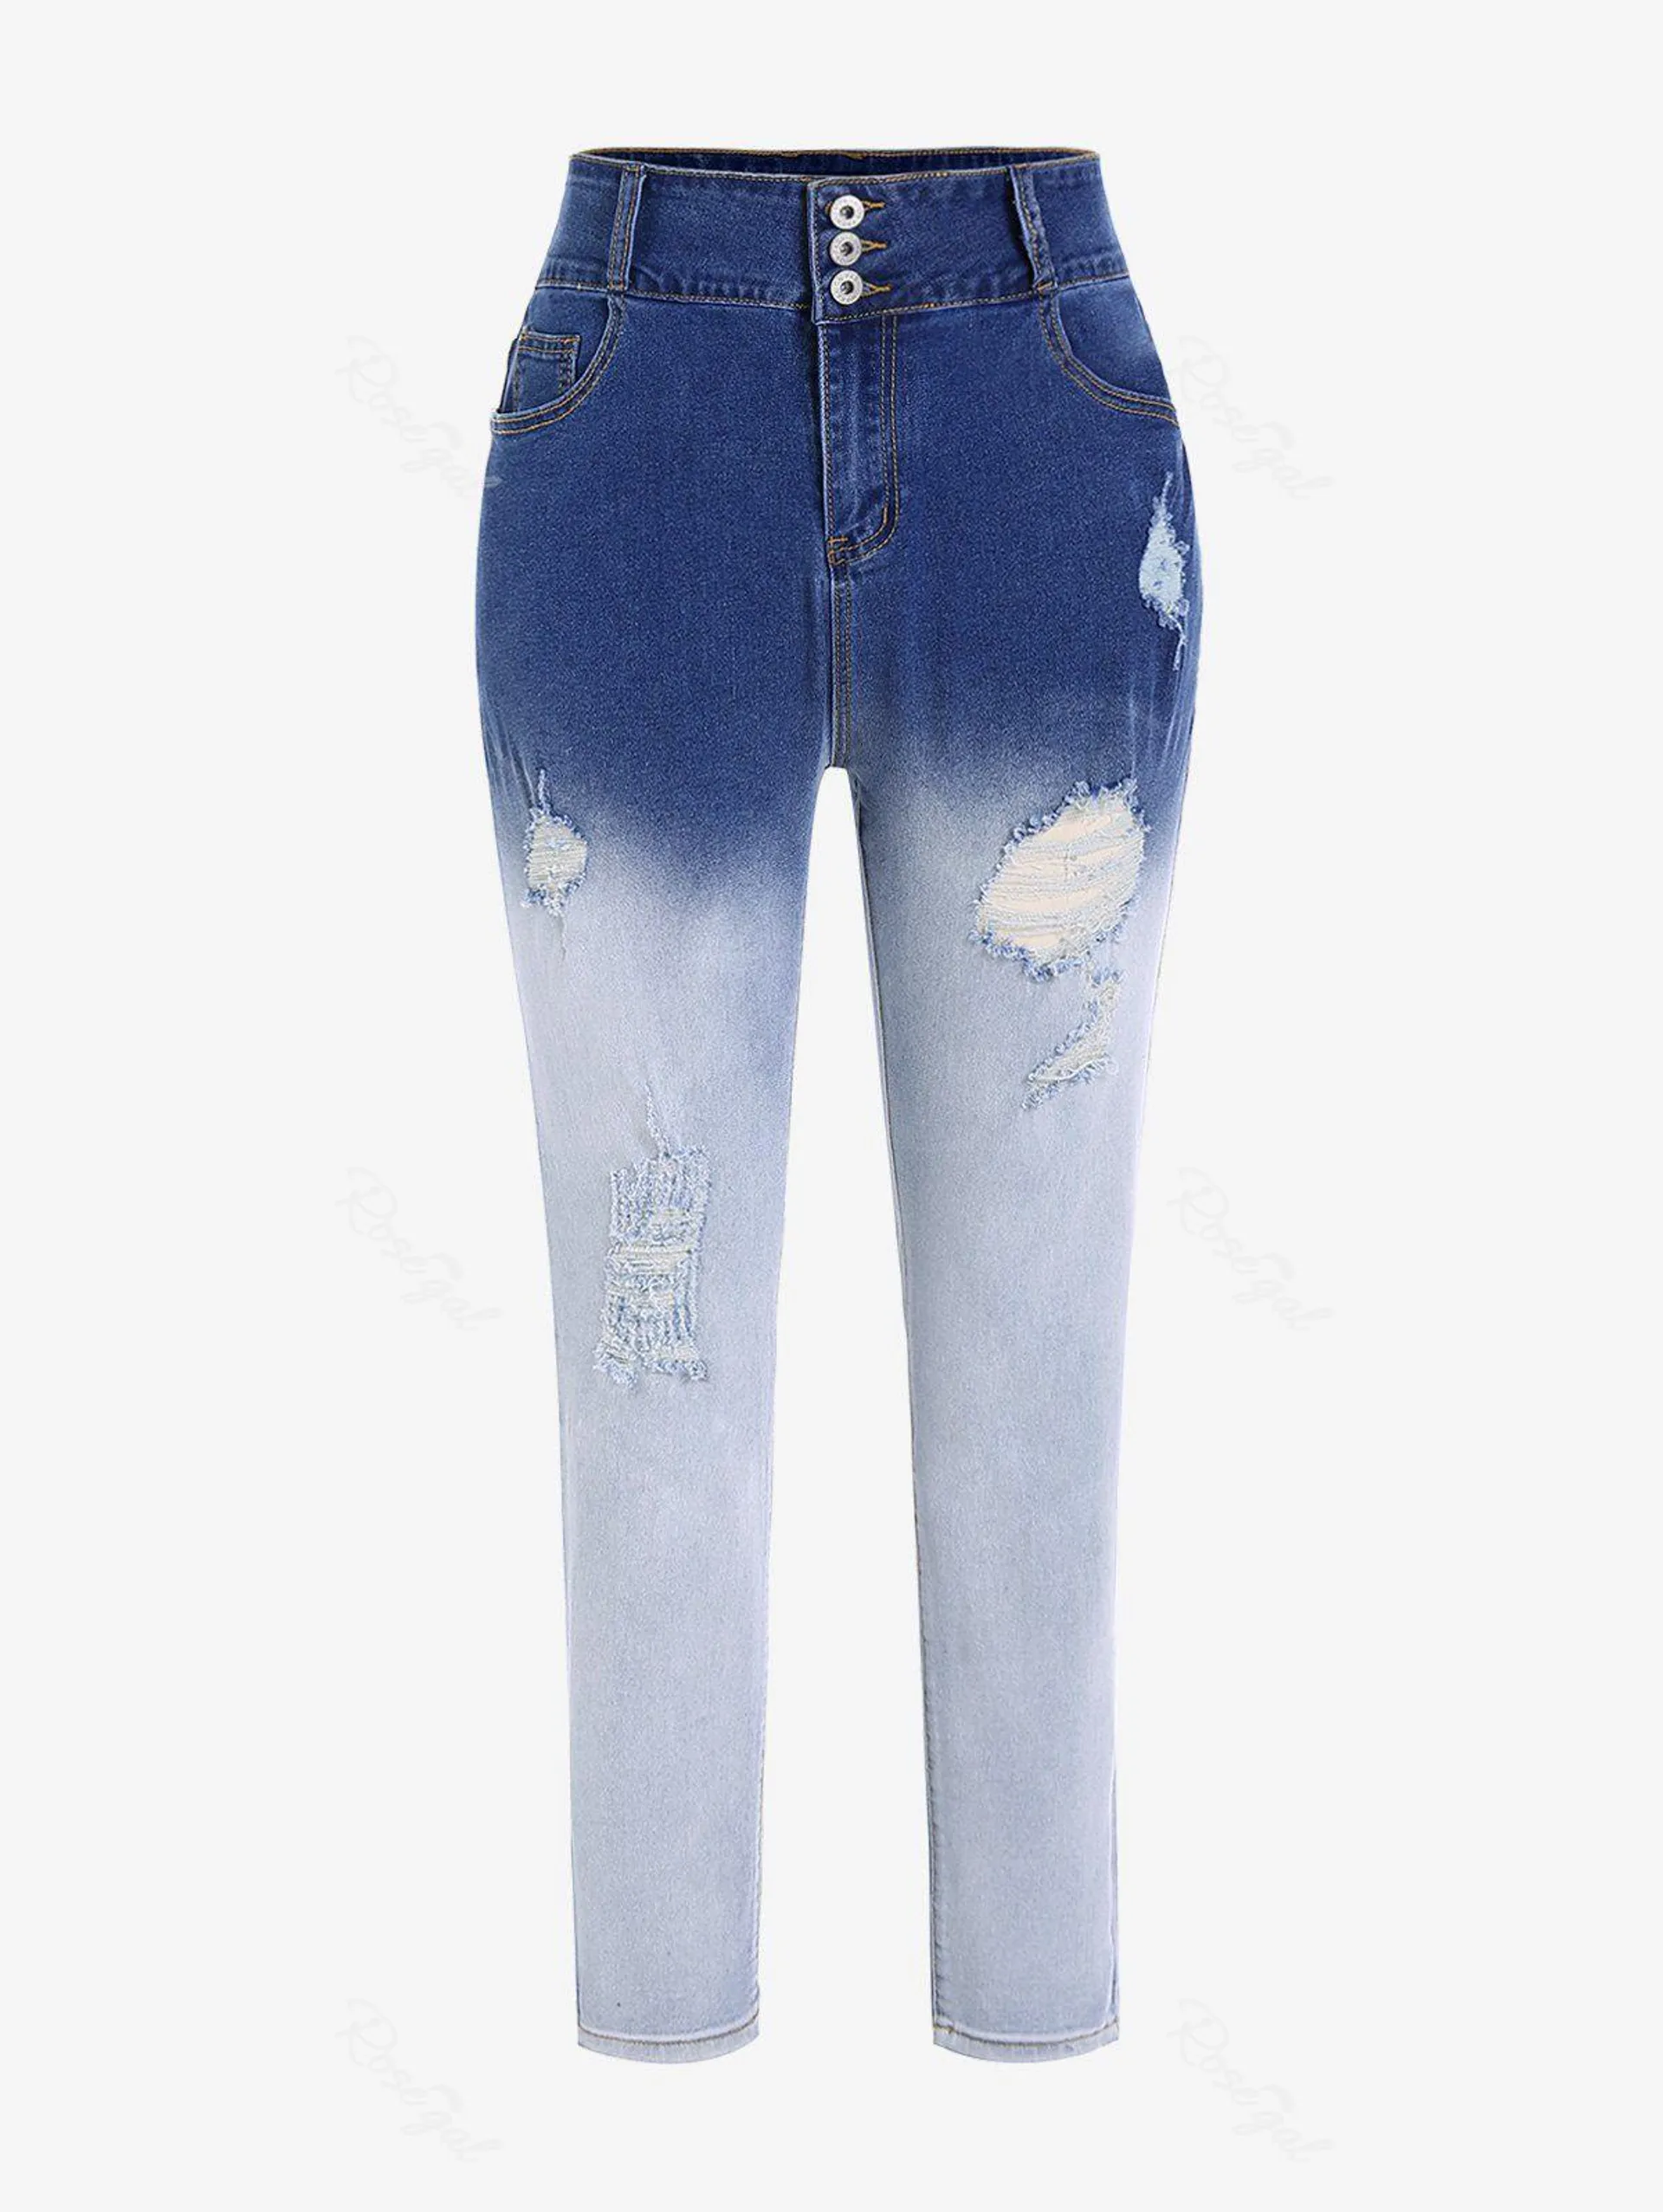 Plus Size Dip Dye Ripped Jeans - 5x